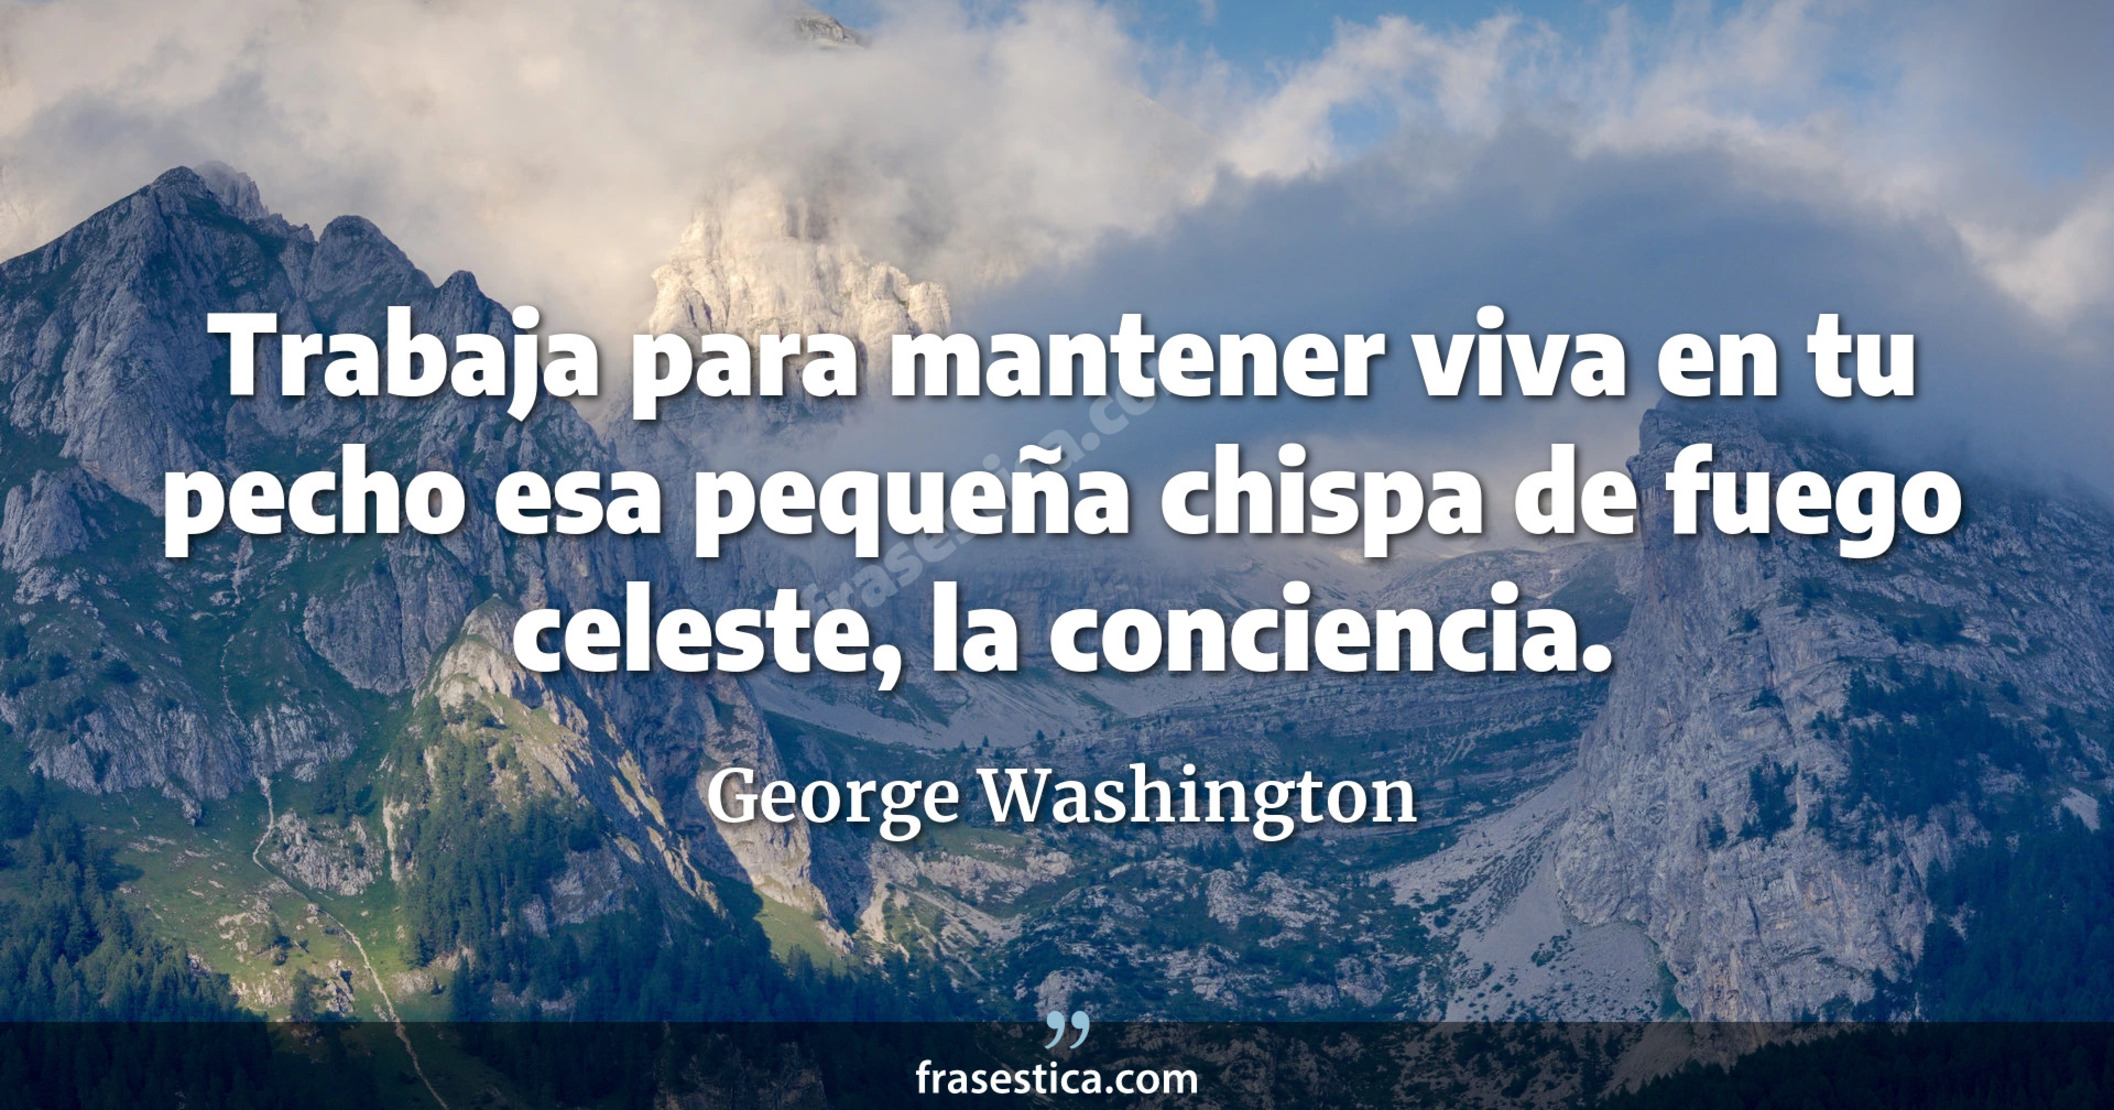 Trabaja para mantener viva en tu pecho esa pequeña chispa de fuego celeste, la conciencia. - George Washington